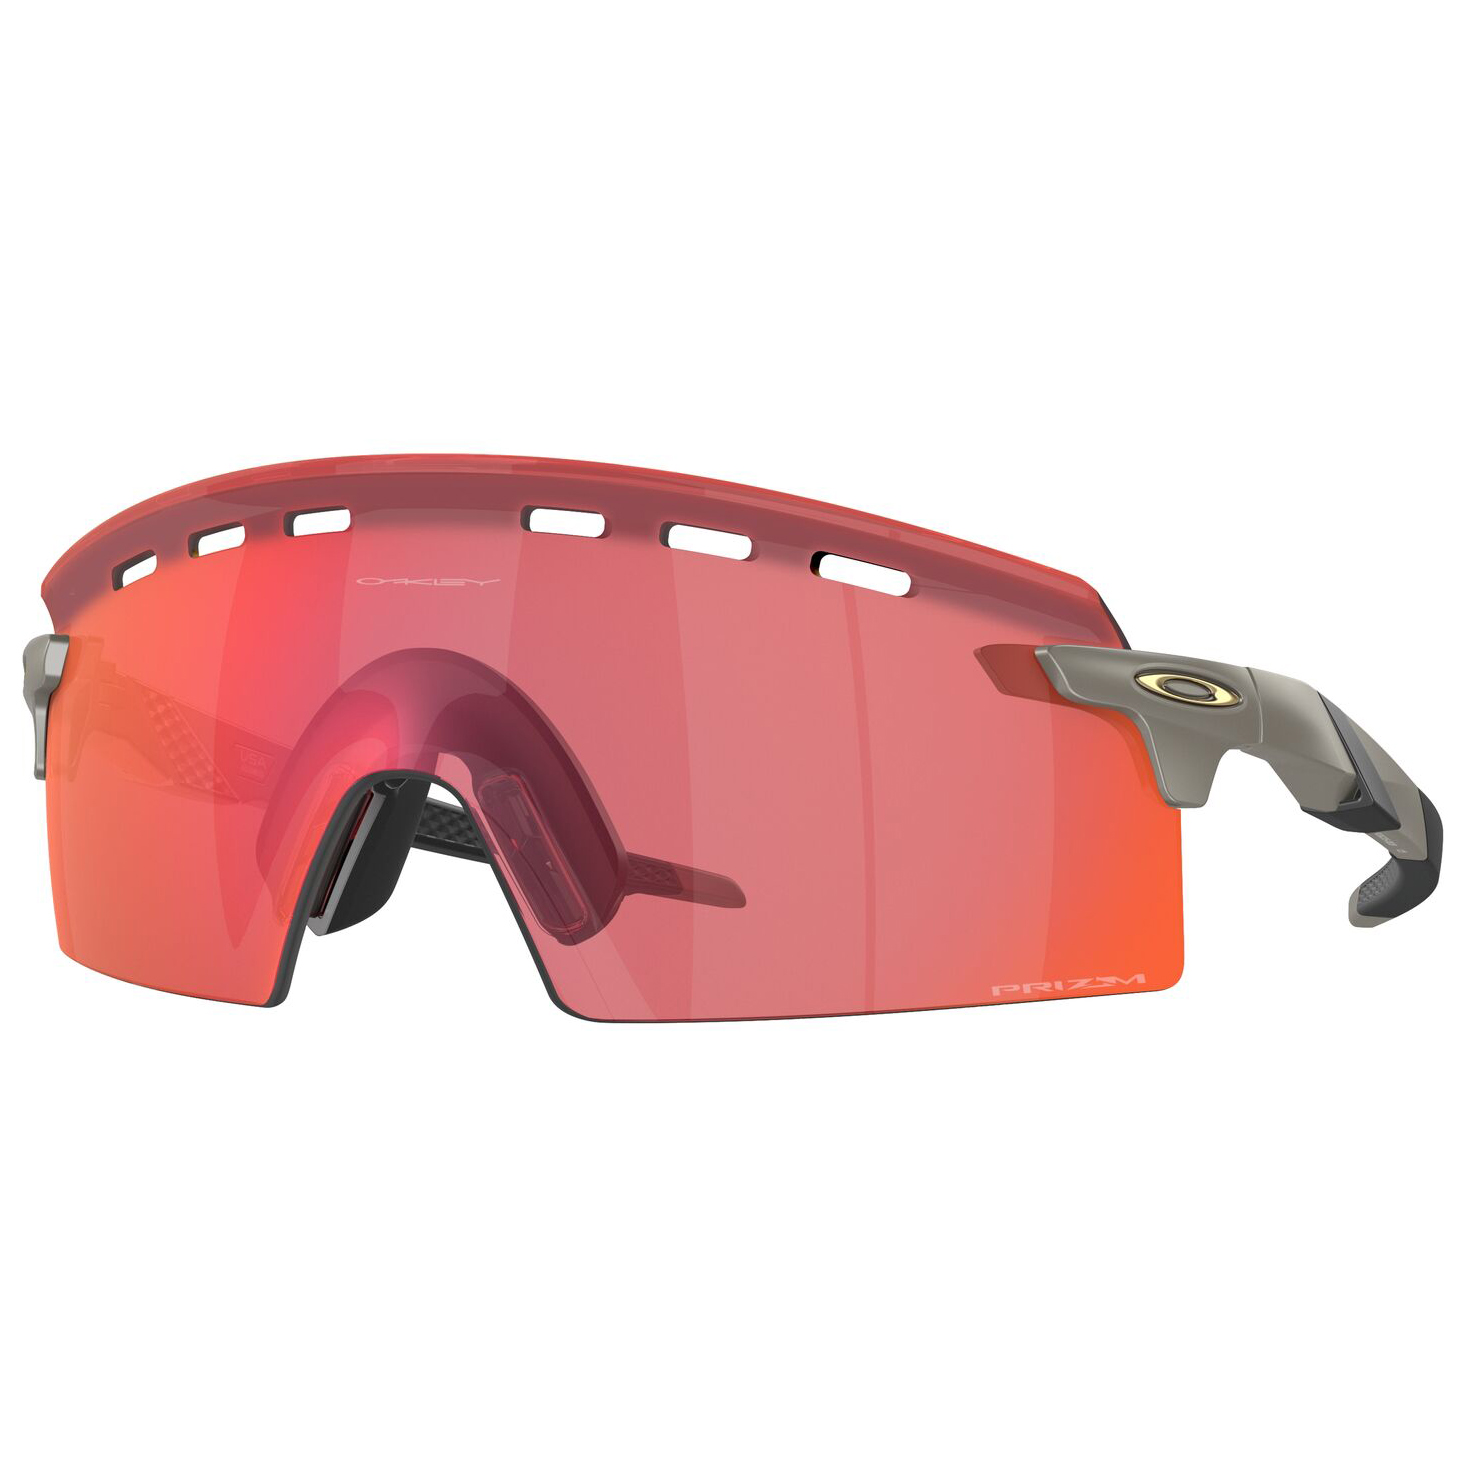 Велосипедные очки Oakley Encoder Strike Vented S3 (VLT 11%), матовый карбон hes 25 2mht encoder